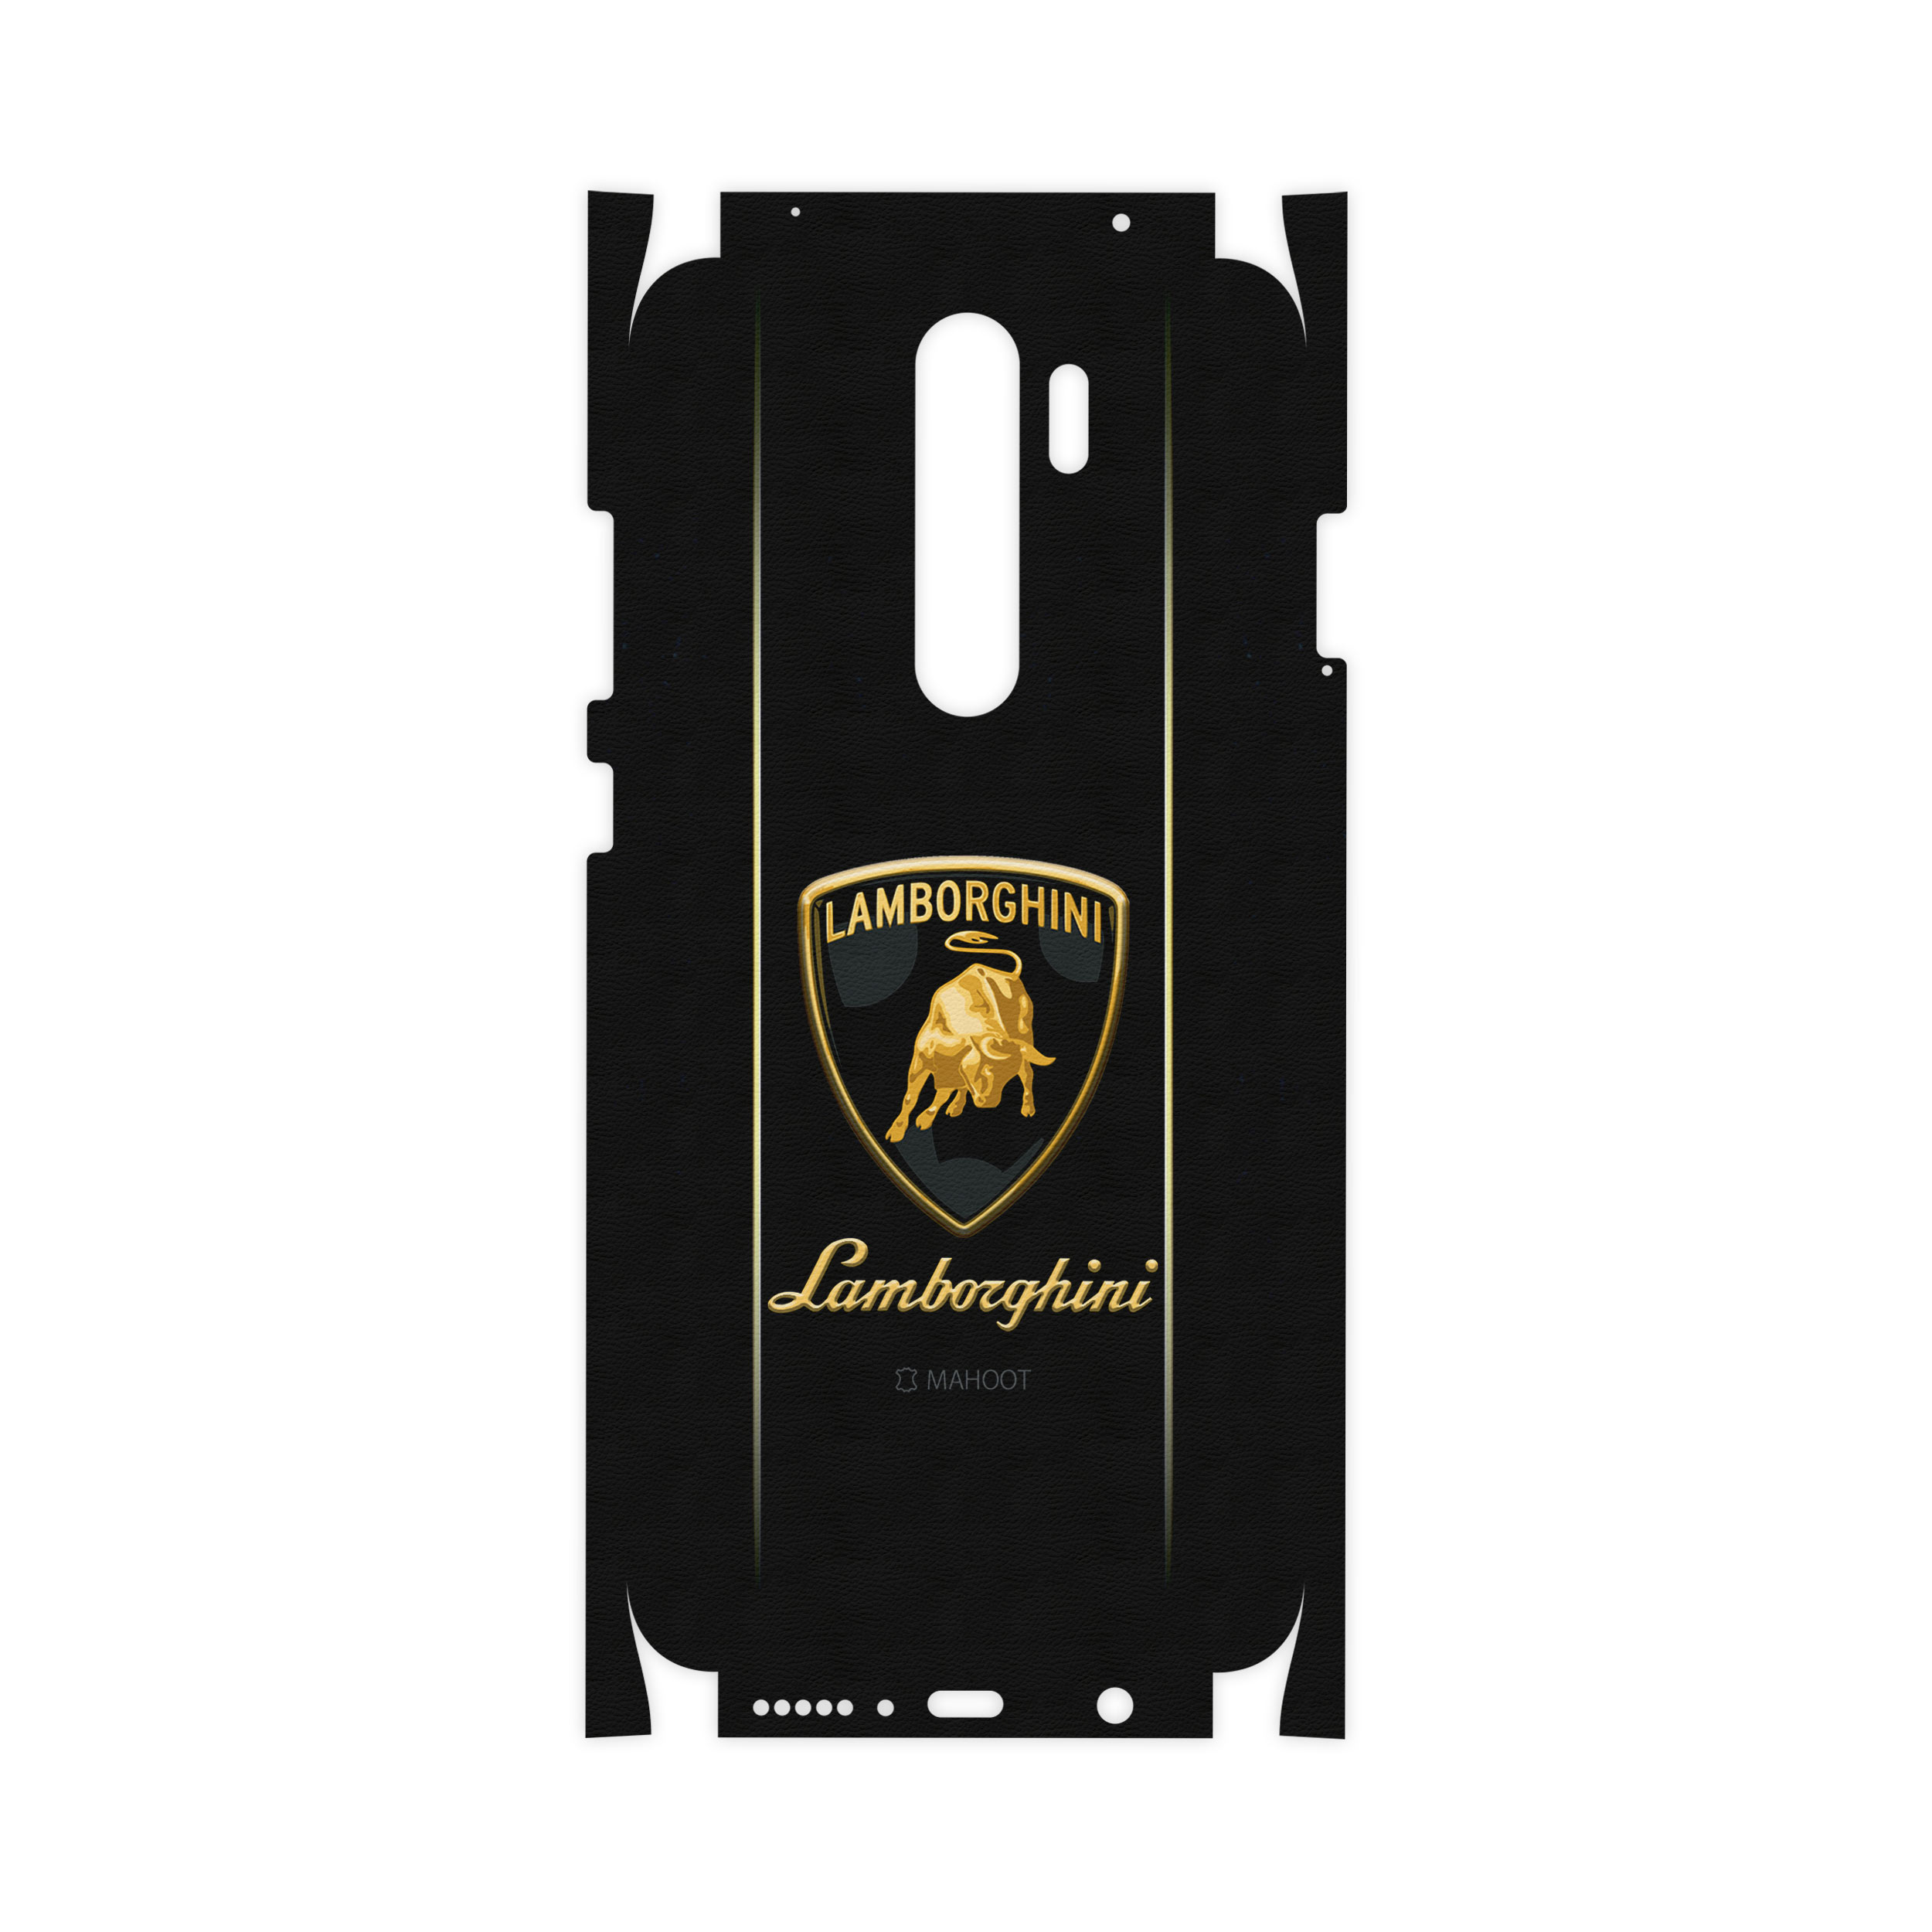 آنباکس برچسب پوششی ماهوت مدل Lamborghini-FullSkin مناسب برای گوشی موبایل شیایومی Redmi Note 8 Pro توسط محمد قزل سفلو در تاریخ ۲۶ مهر ۱۴۰۰